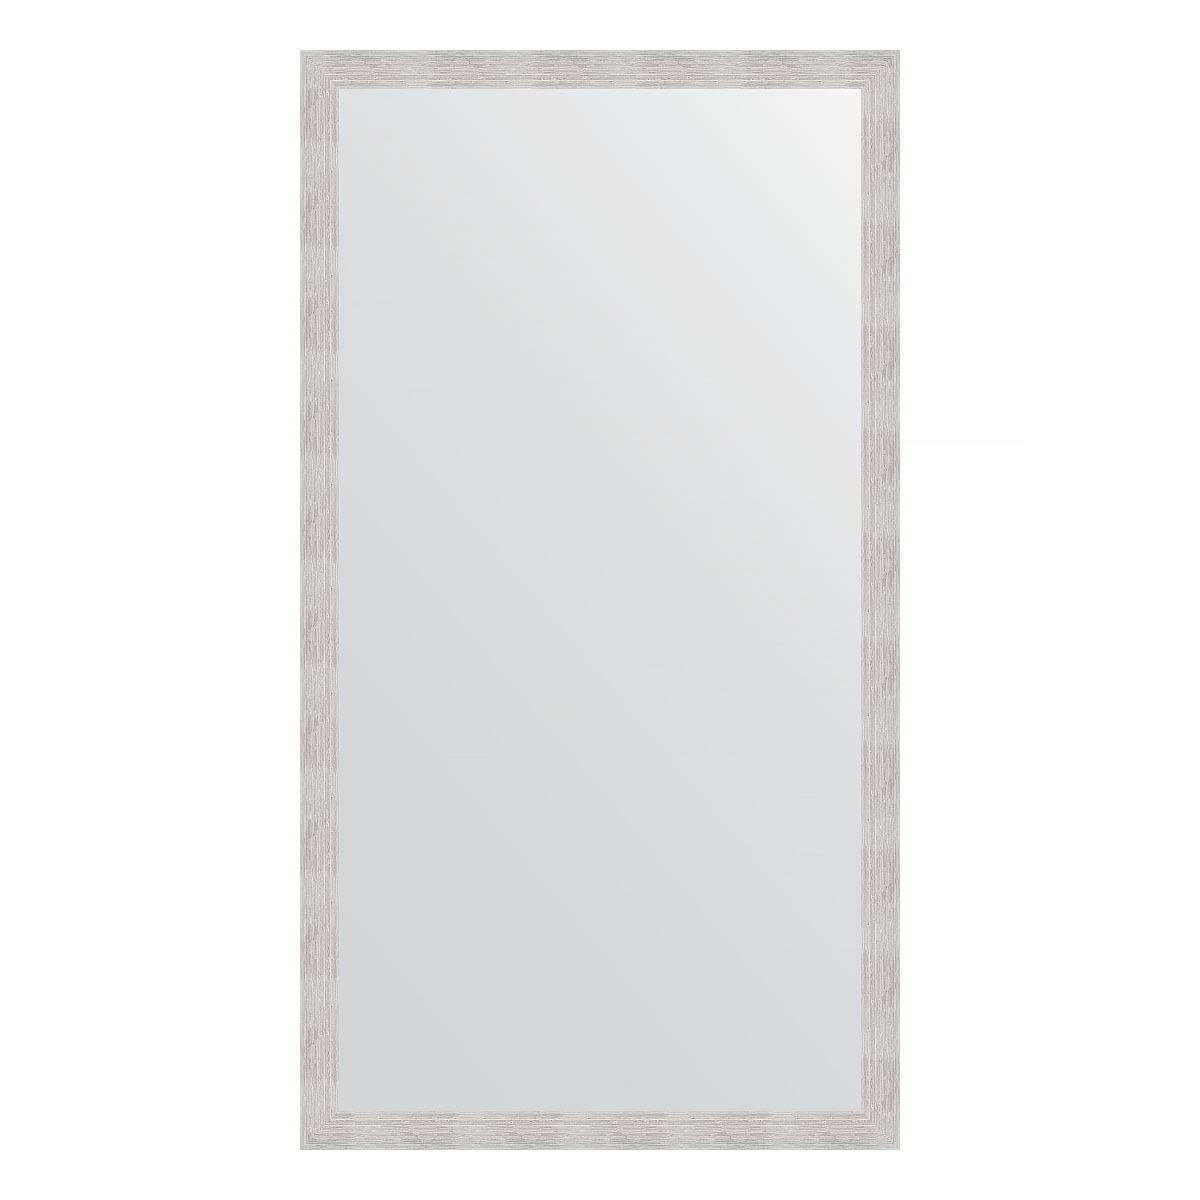 Зеркало напольное в багетной раме Evoform серебряный дождь 70 мм 108x197 см